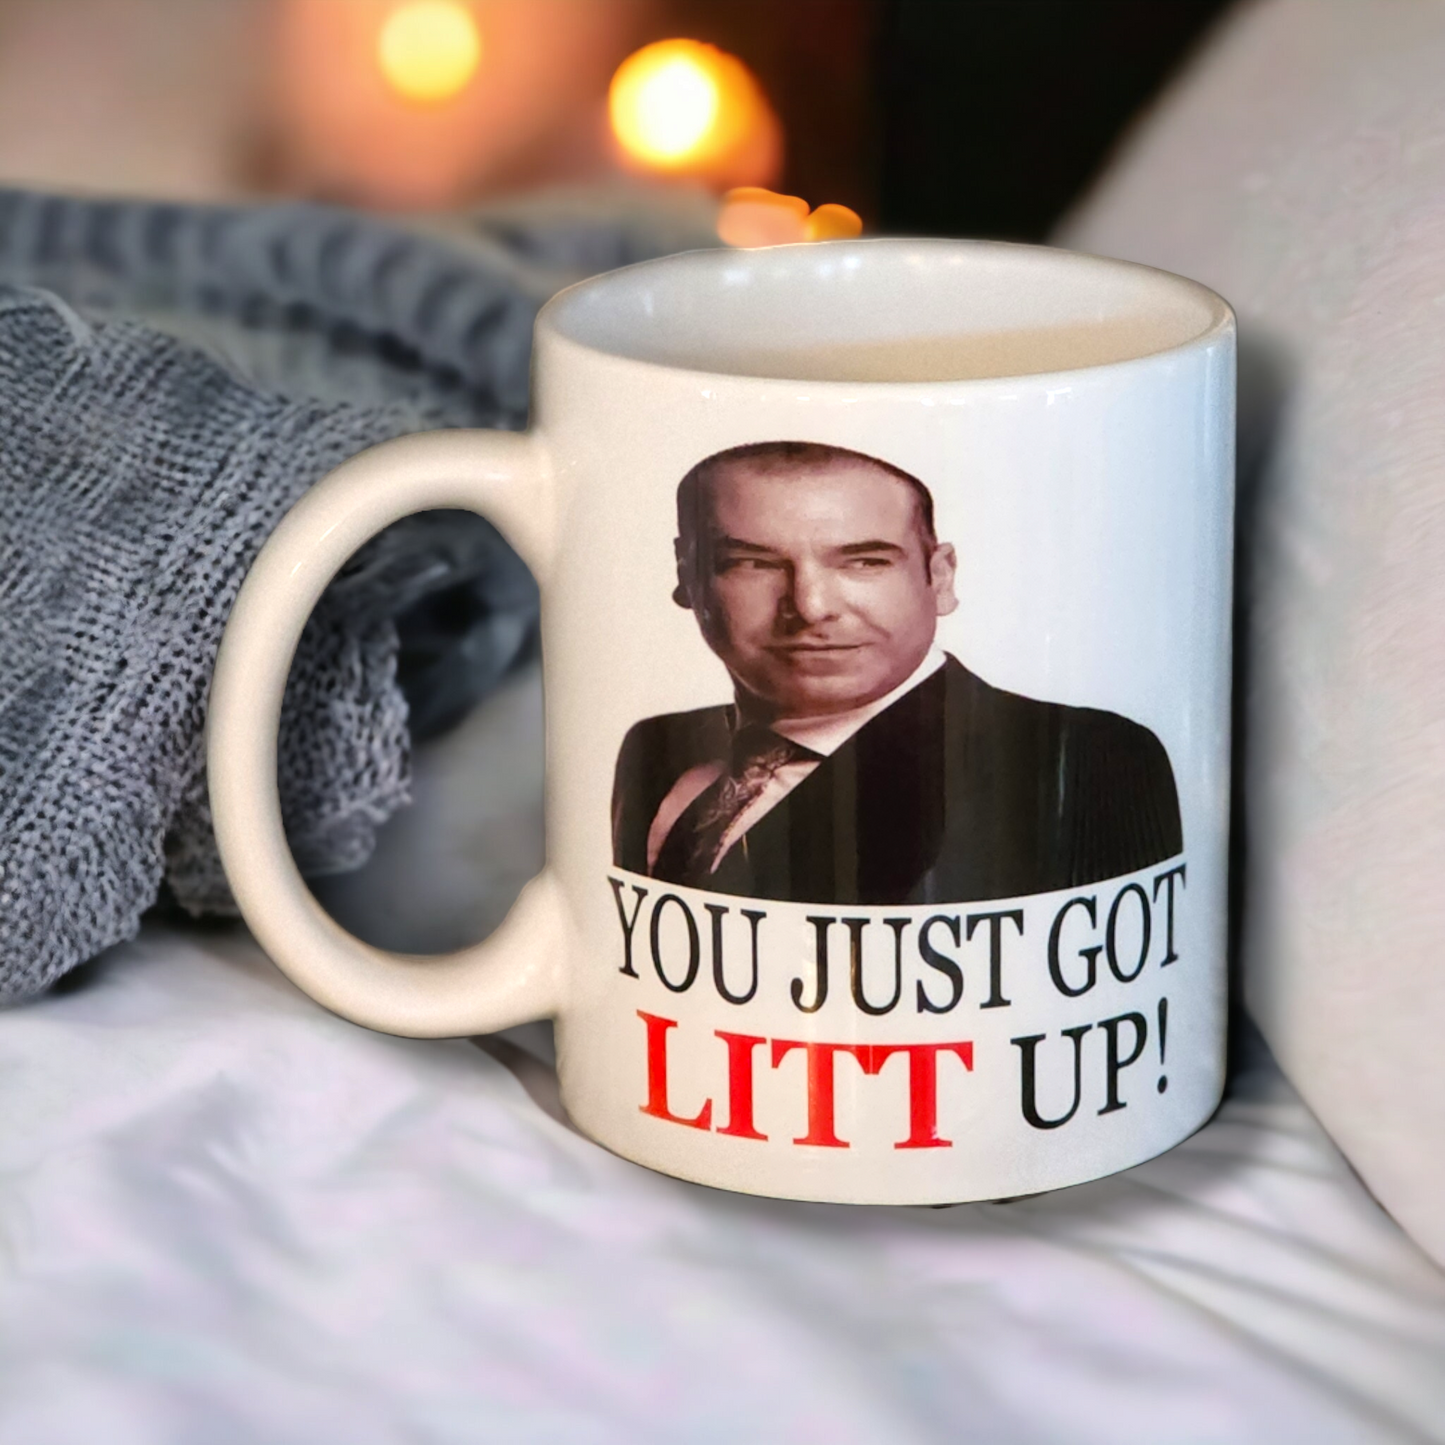 Litt up mug